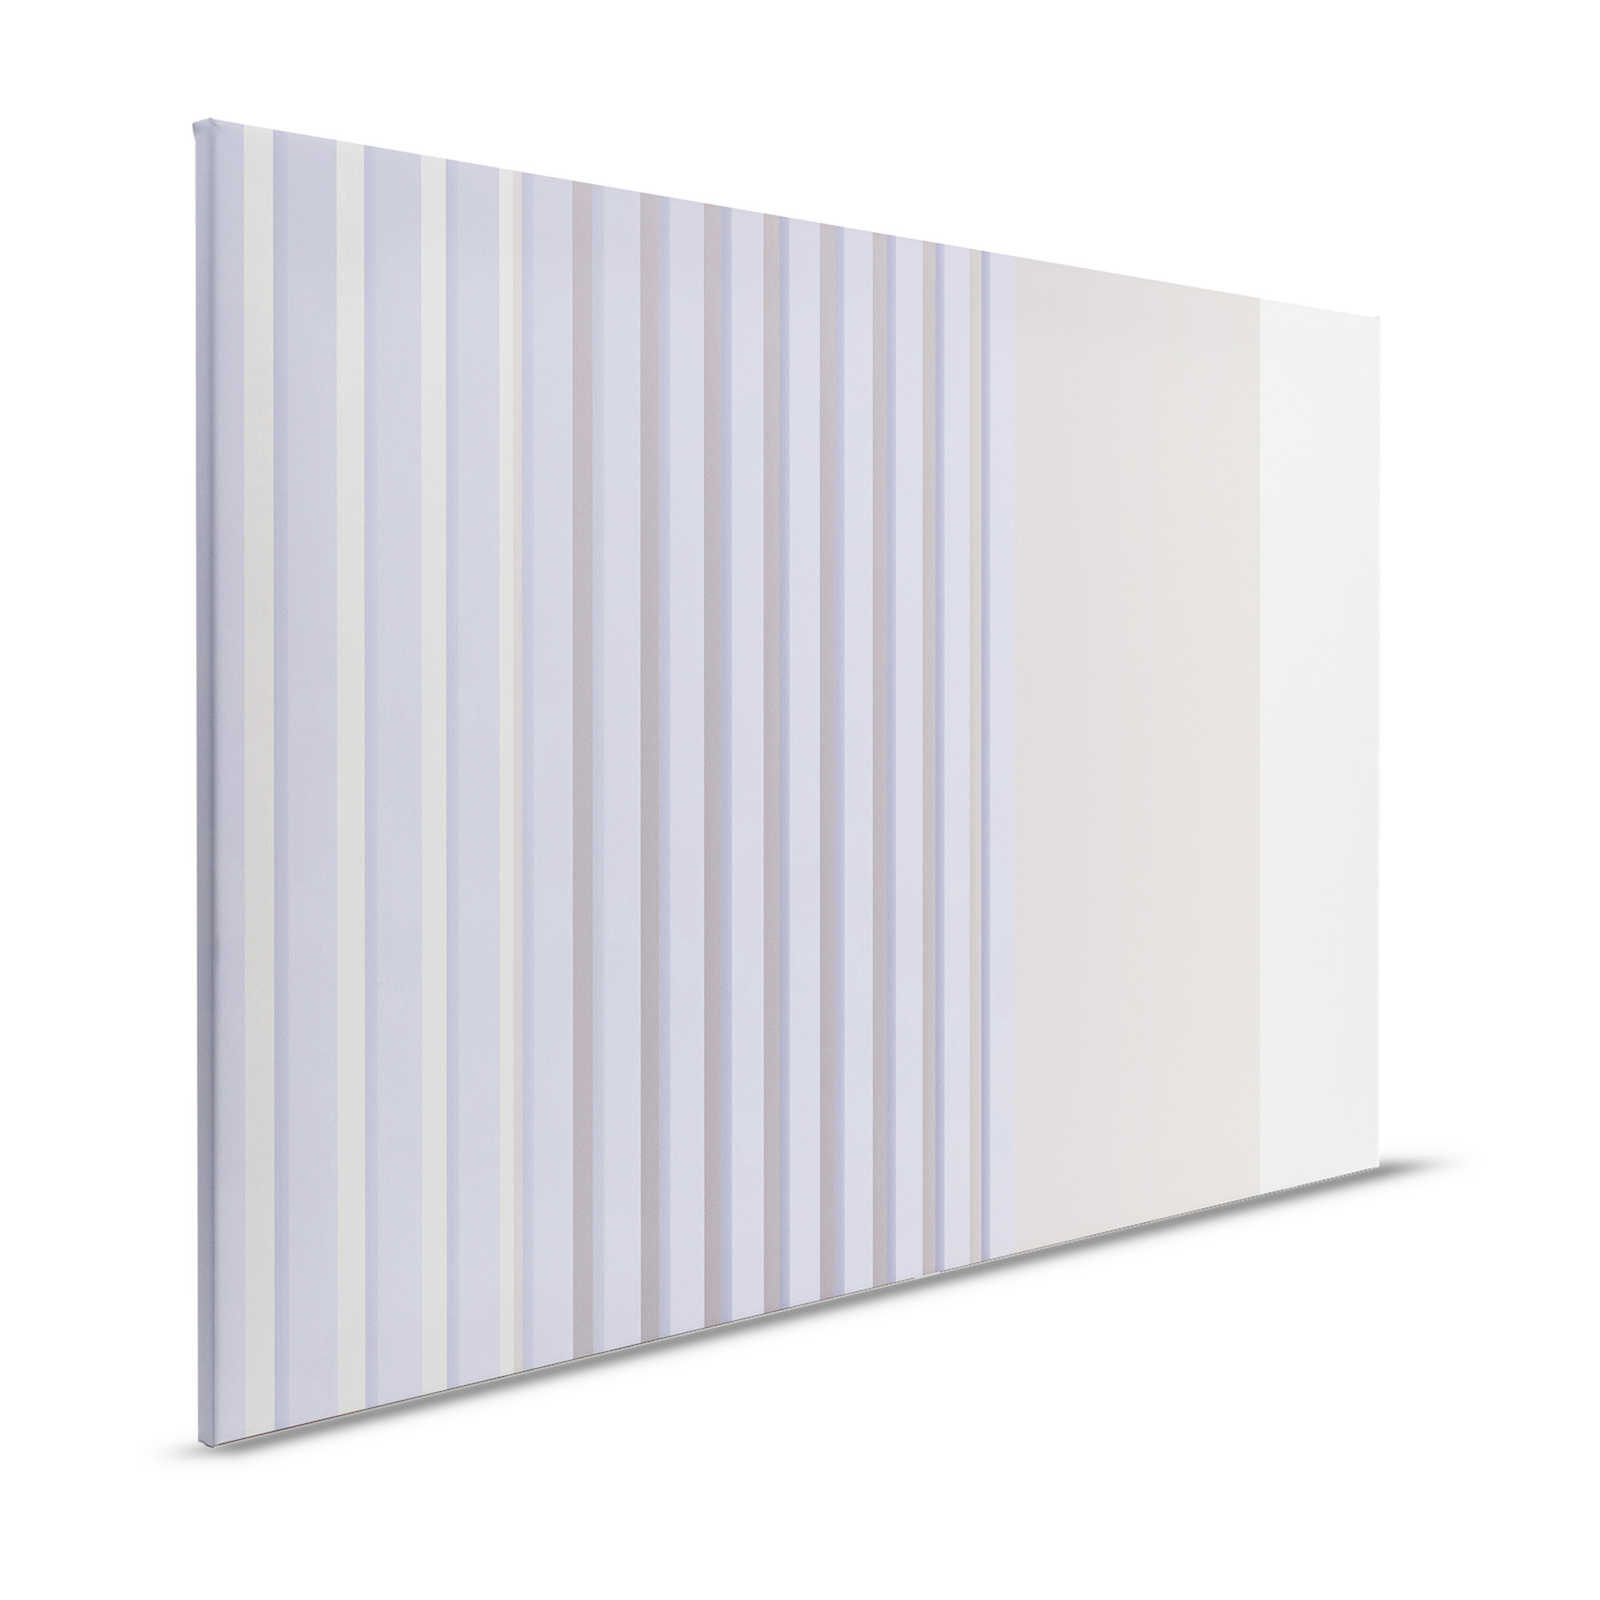 Illusion Room 1 - Quadro su tela con disegno a righe 3D in viola e grigio - 1,20 m x 0,80 m
